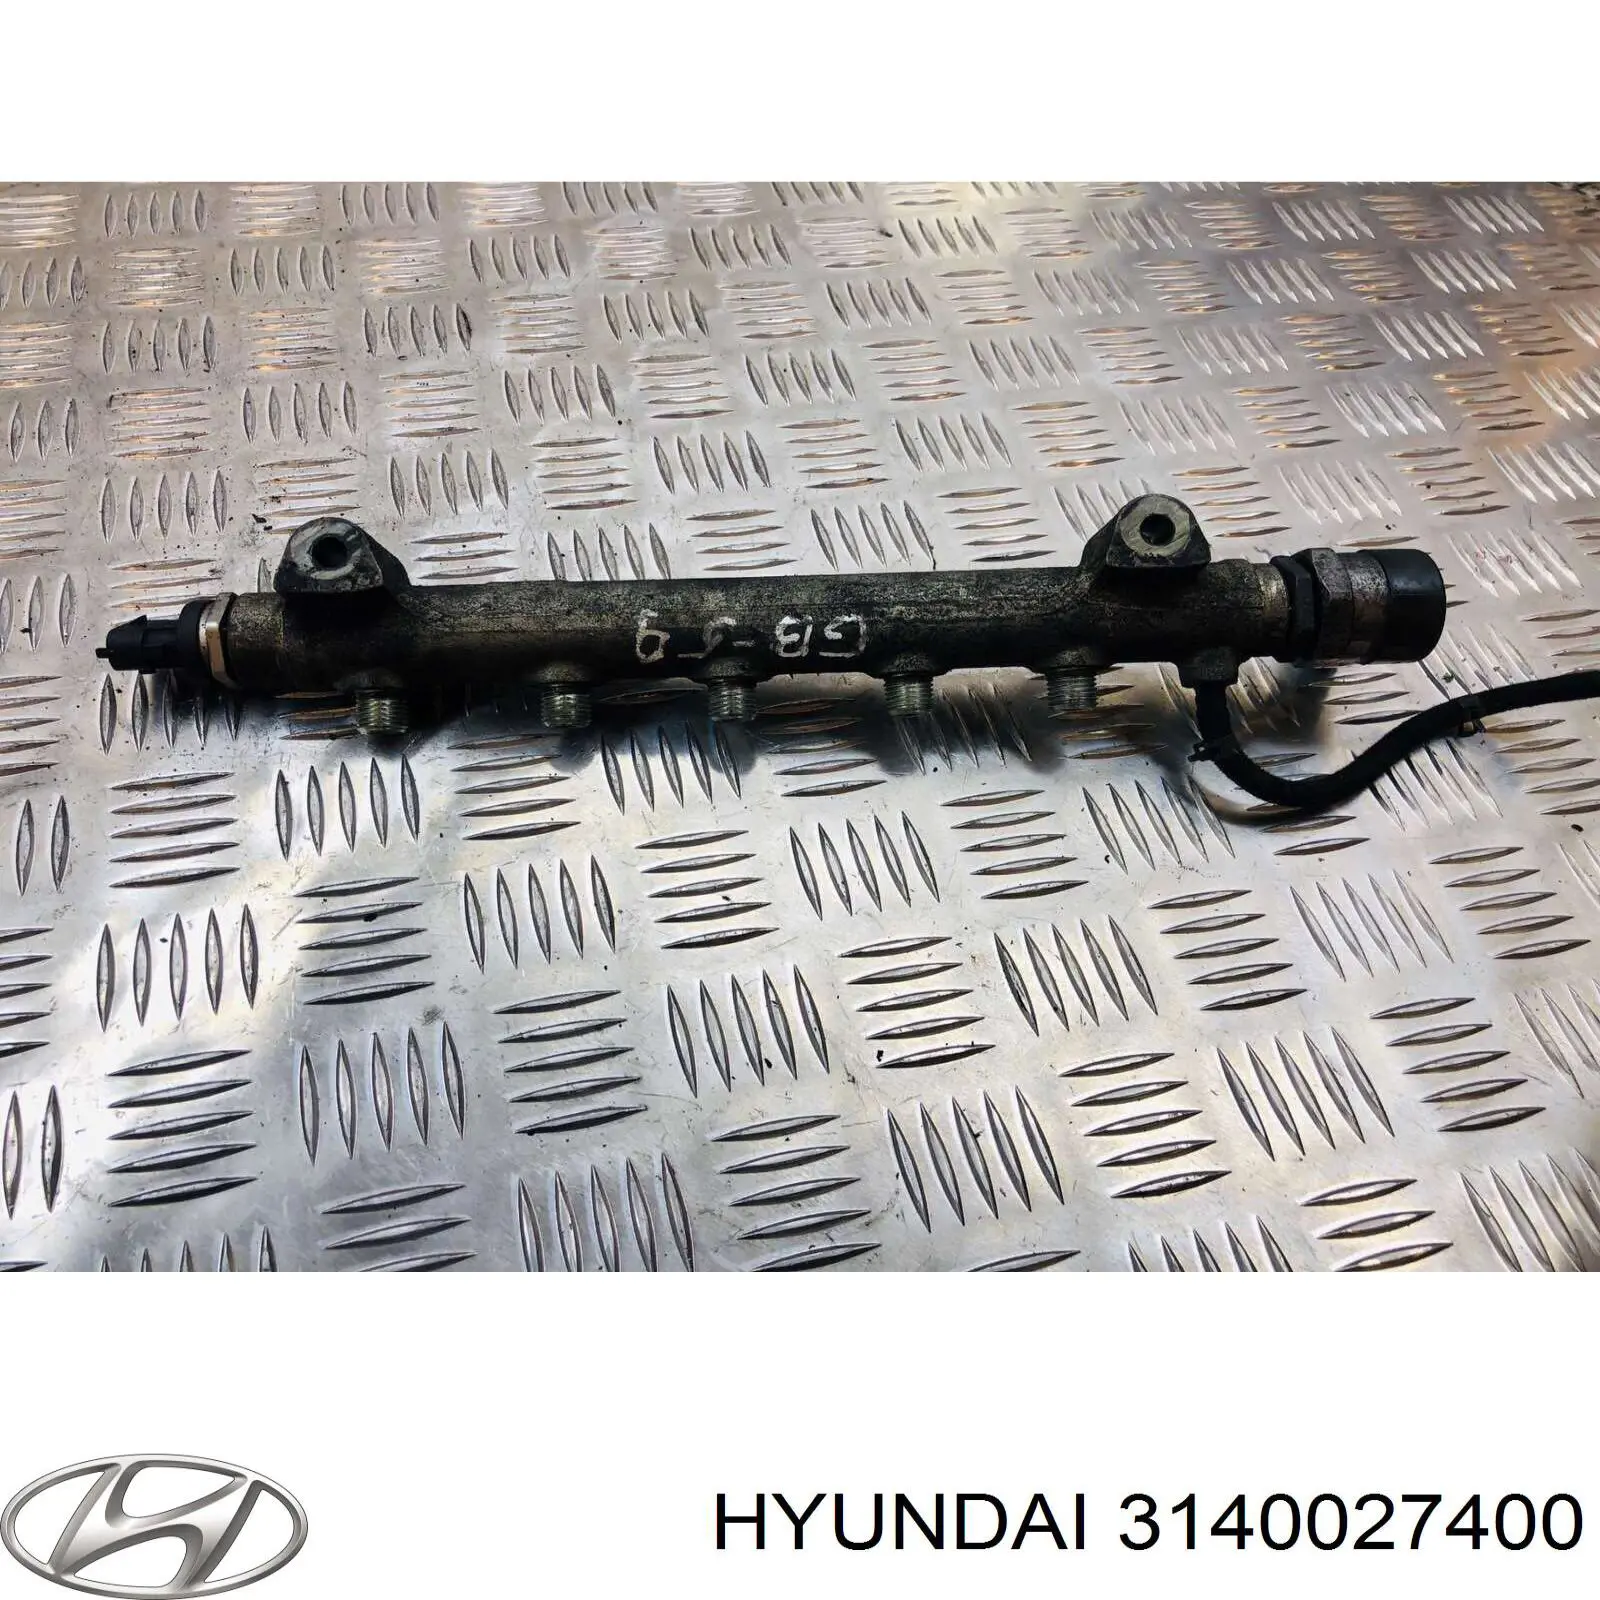 3140027400 Hyundai/Kia rampa de inyectores